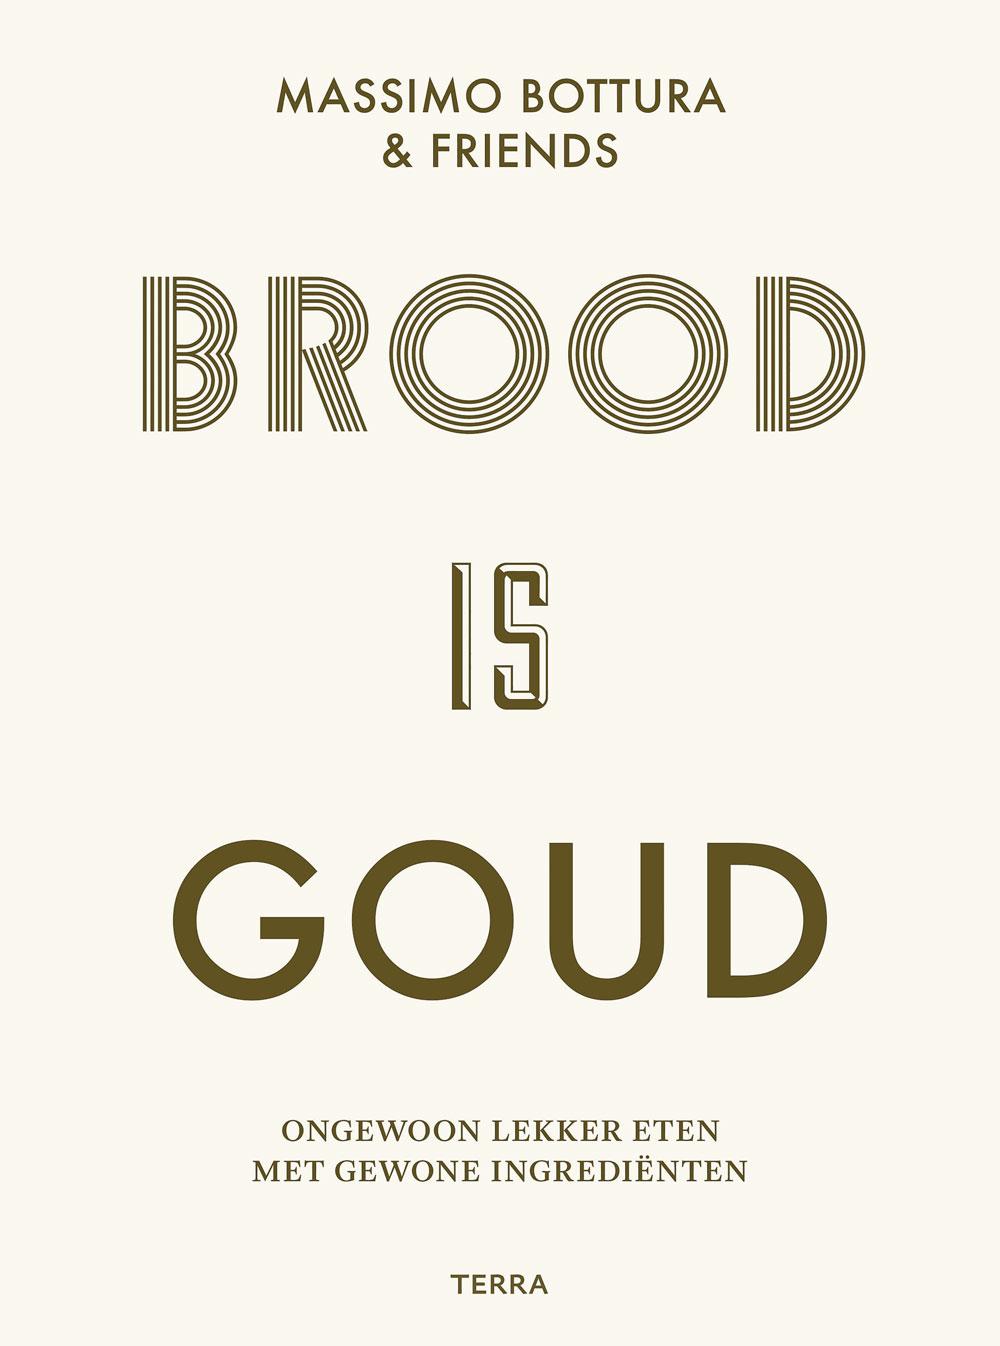 Brood is goud, ongewoon lekker eten met gewone ingrediënten, Massimo Bottura en vrienden, uitgeverij Terra, 39,99 euro.